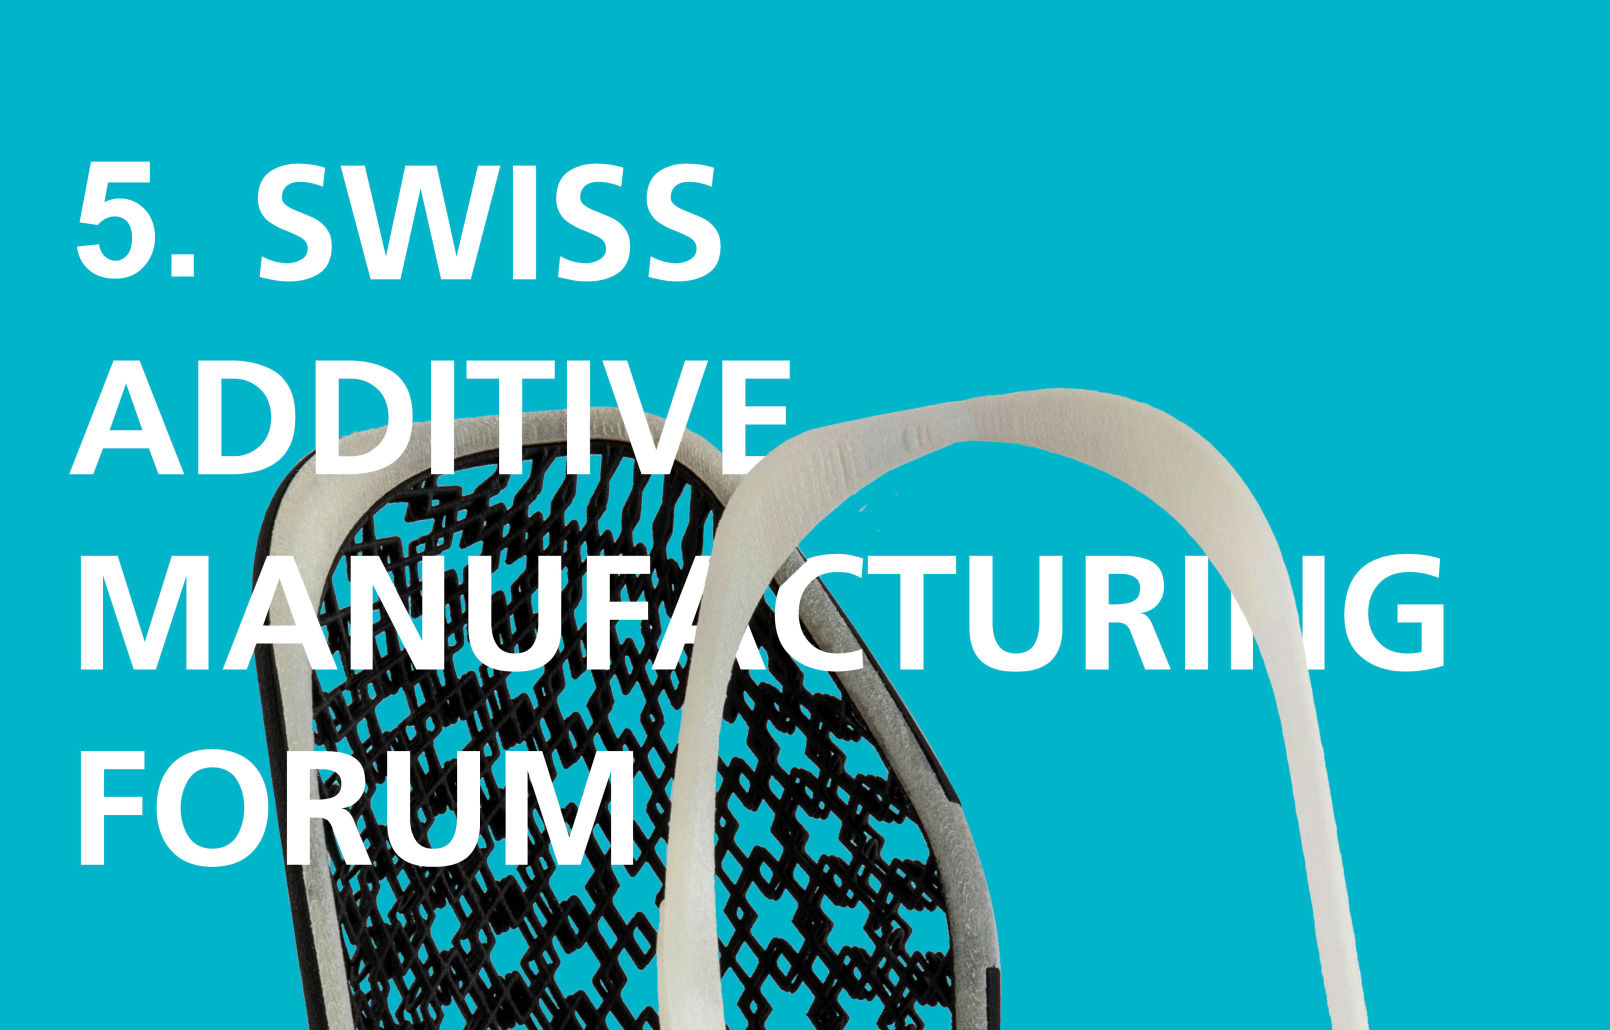 Jetzt anmelden an das 5. Swiss Additive Manufacturing Forum